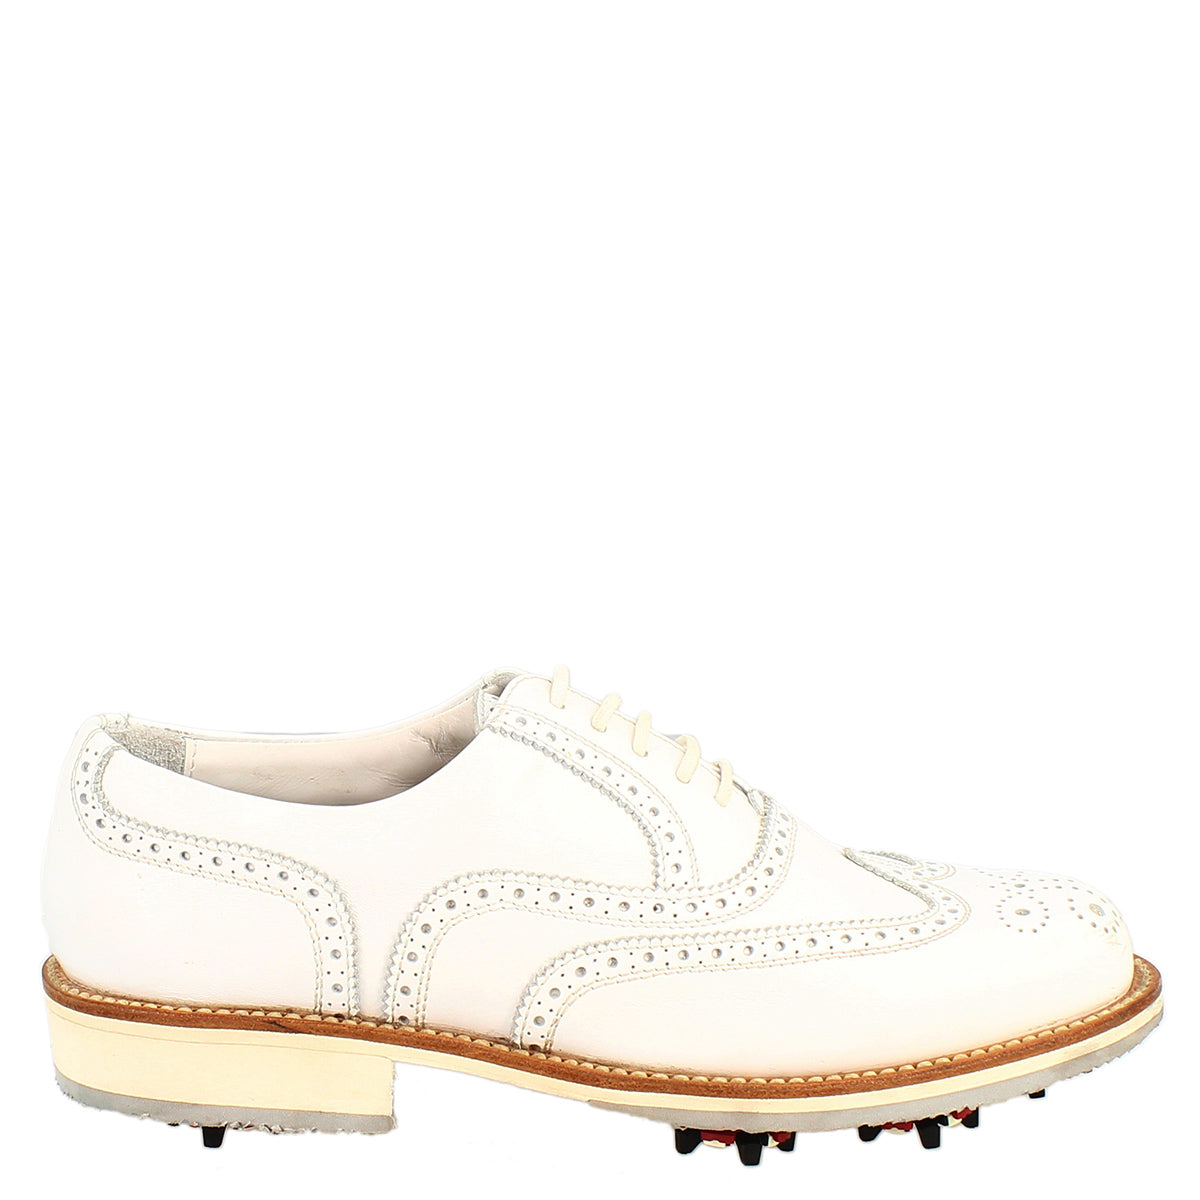 Scarpe da golf uomo classiche brogues artigianali in pelle bianca